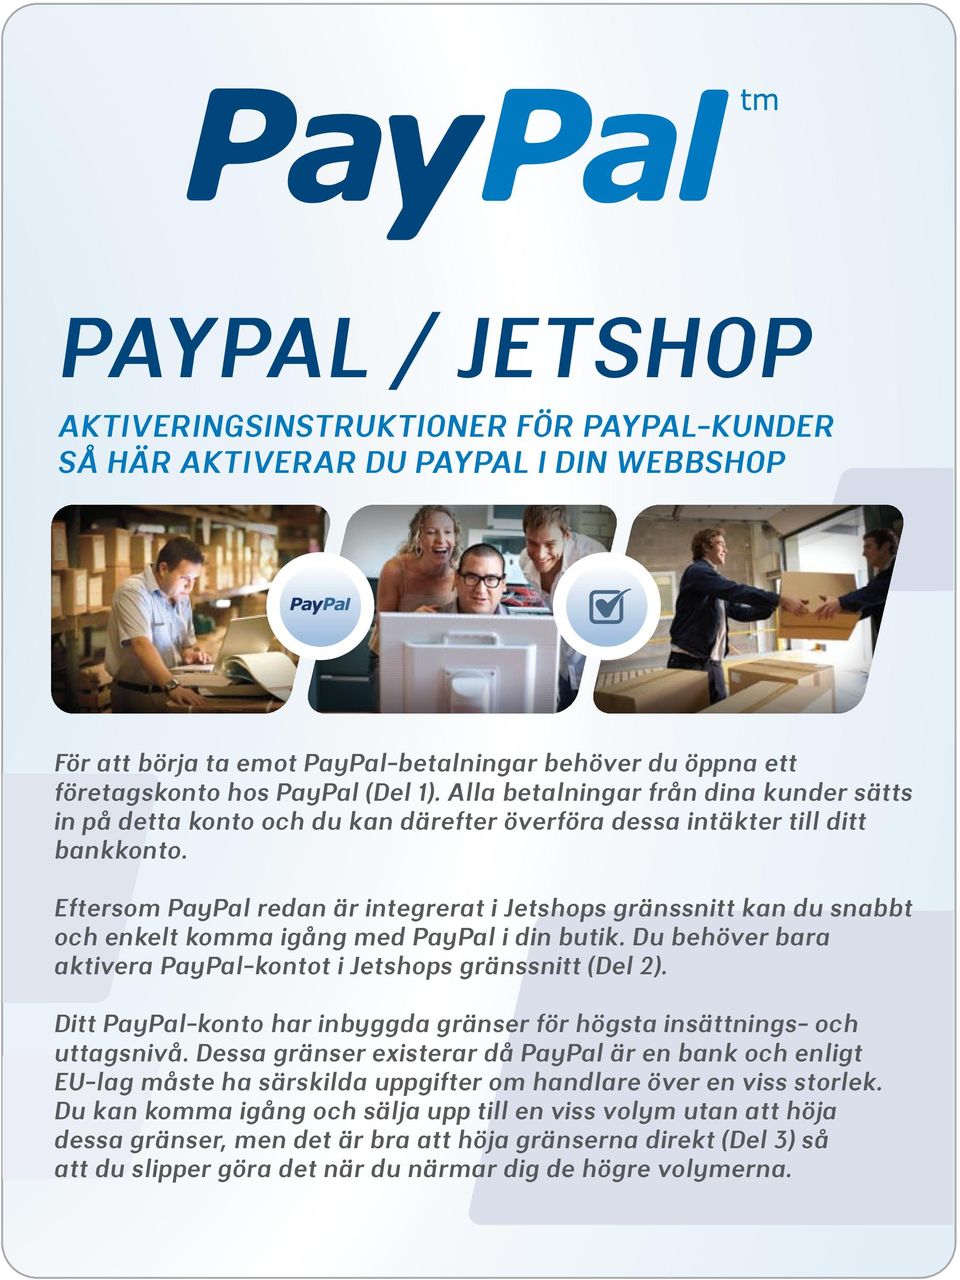 Eftersom PayPal redan är integrerat i Jetshops gränssnitt kan du snabbt och enkelt komma igång med PayPal i din butik. Du behöver bara aktivera PayPal-kontot i Jetshops gränssnitt (Del 2).